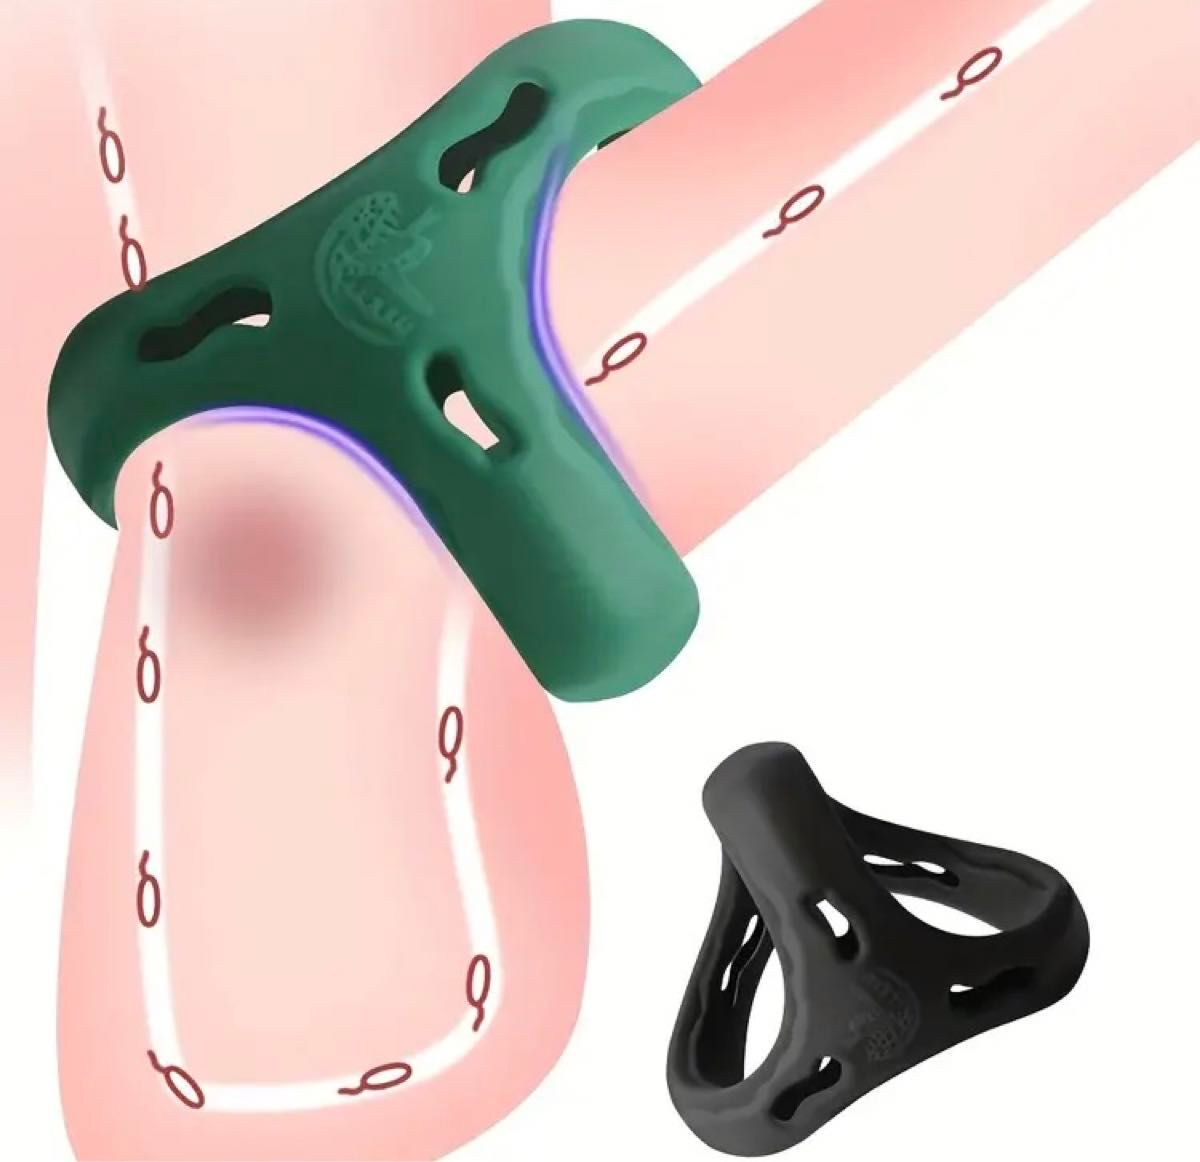 メンズ アクセサリー ペニスリング コックリング C-ring シリコンゴム製 緑色 グリーン